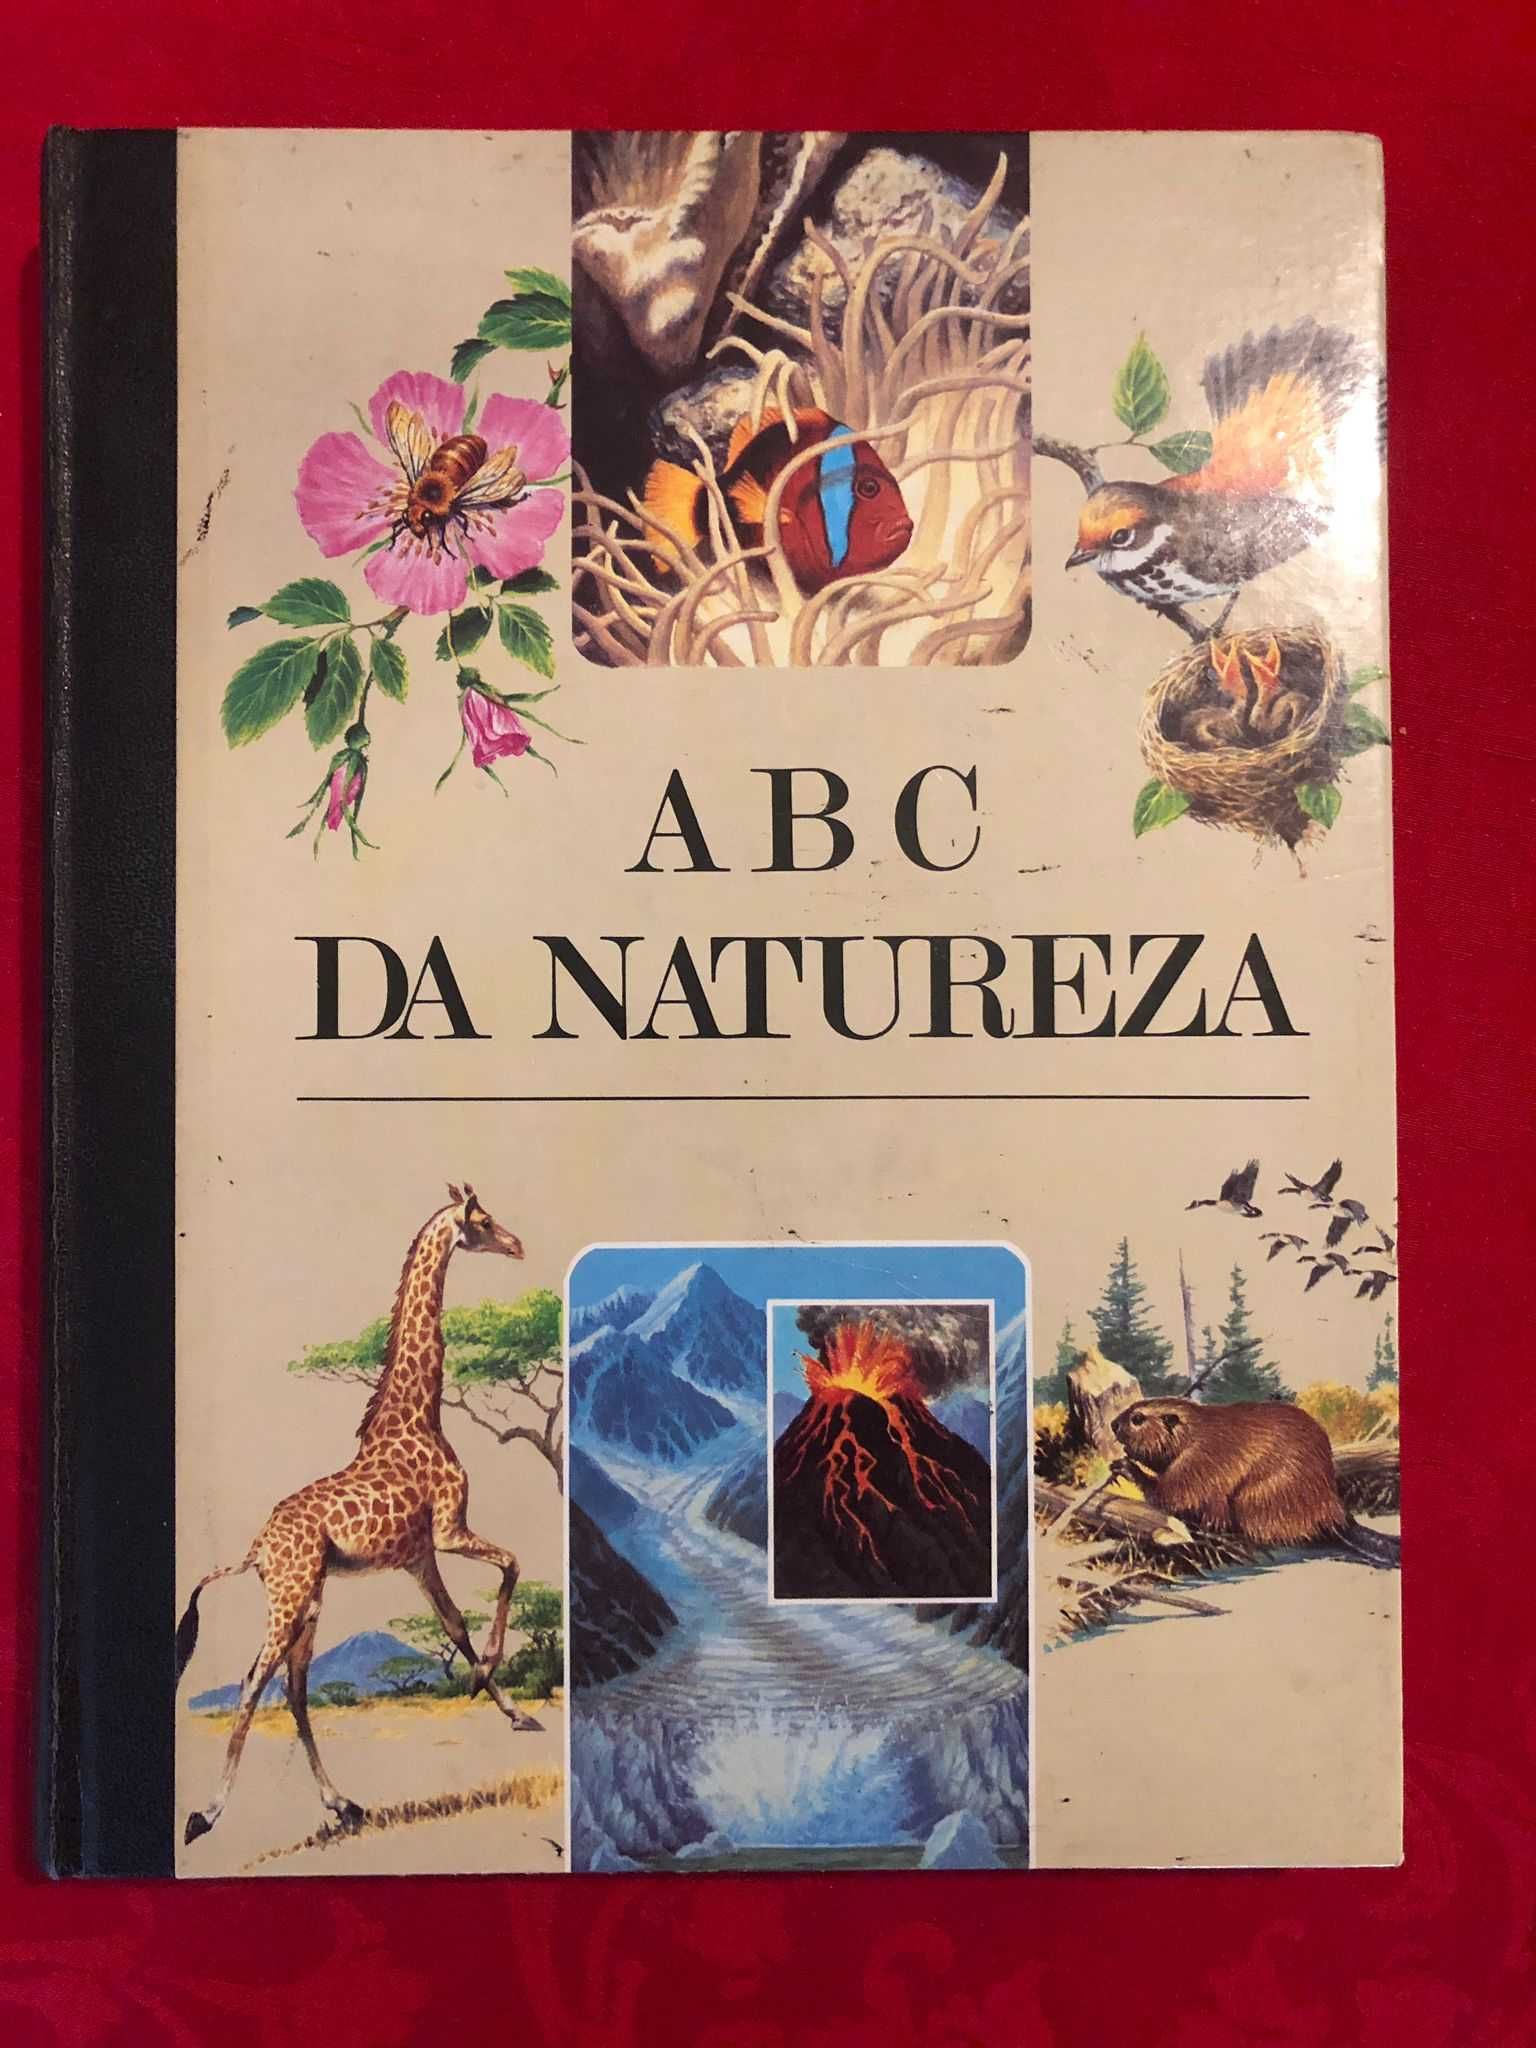 Enciclopédia o "ABC DA NATUREZA"